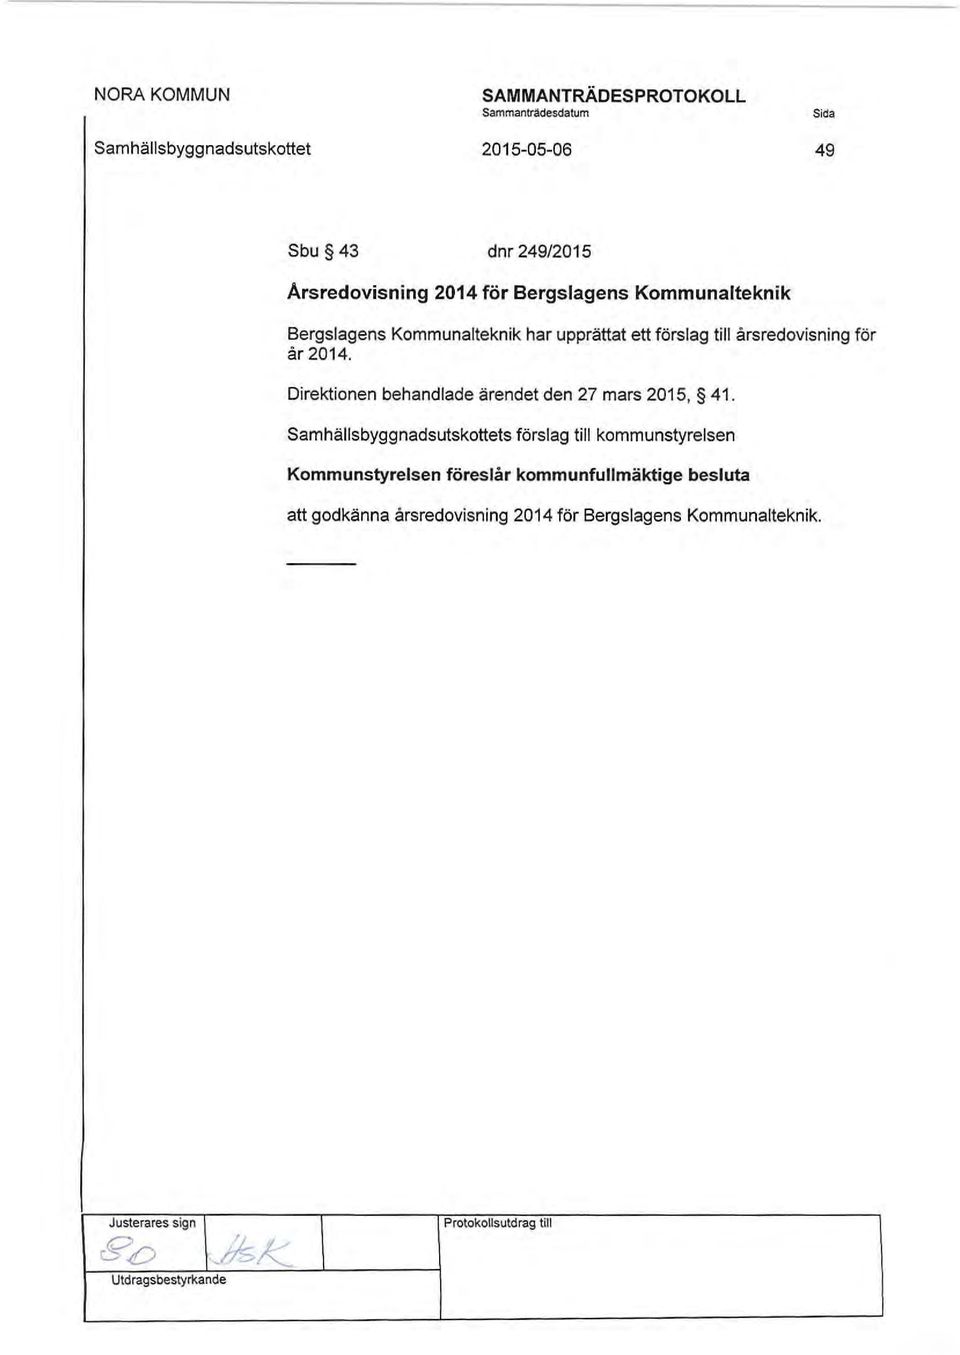 Direktionen behandlade ärendet den 27 mars 2015, 41.